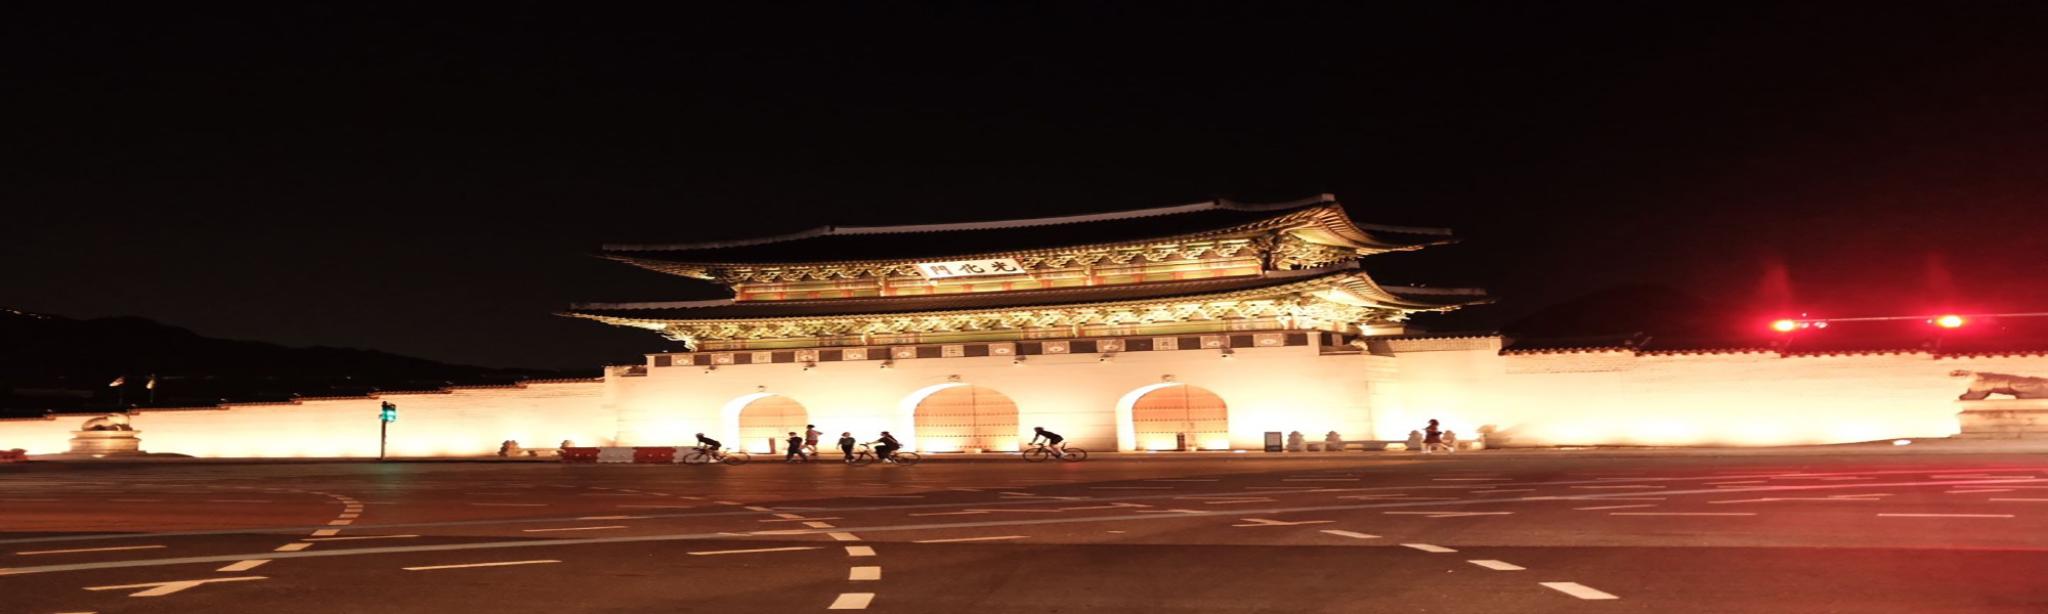 korean palace night view